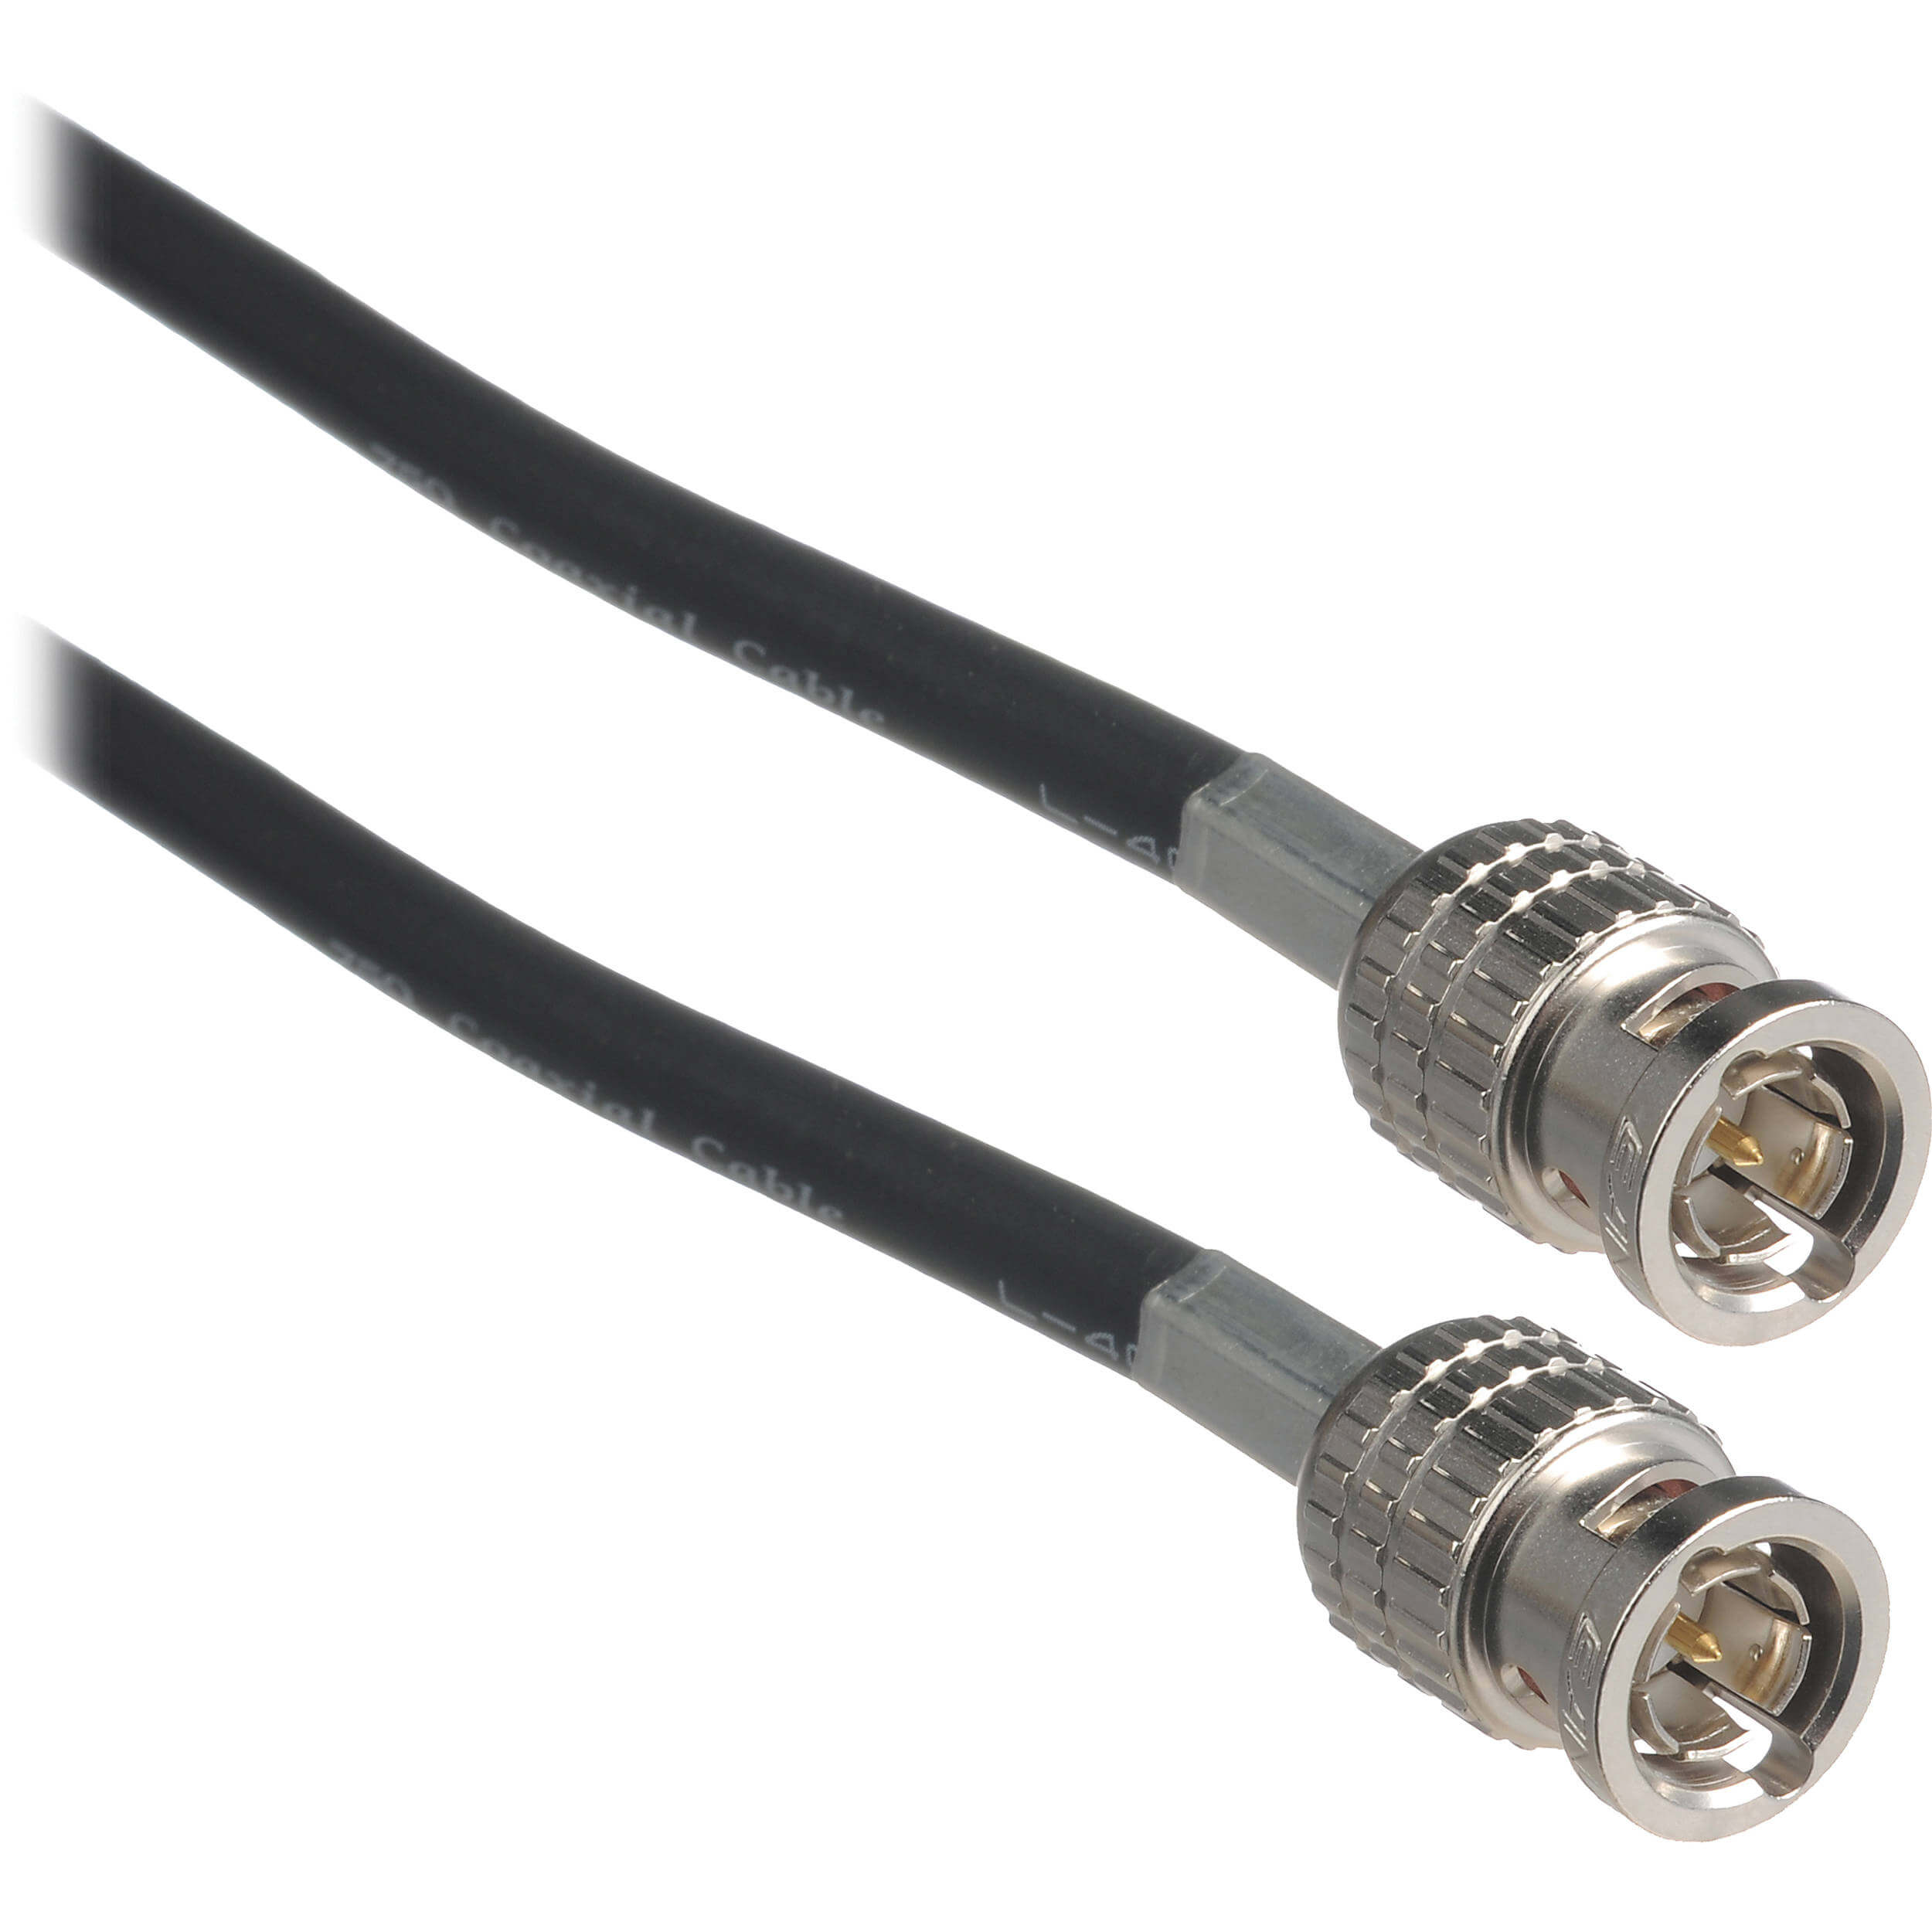 Shure general UA8100 Cable coaxial  bnc para antenas y preamplificadores de rf  (30 m).